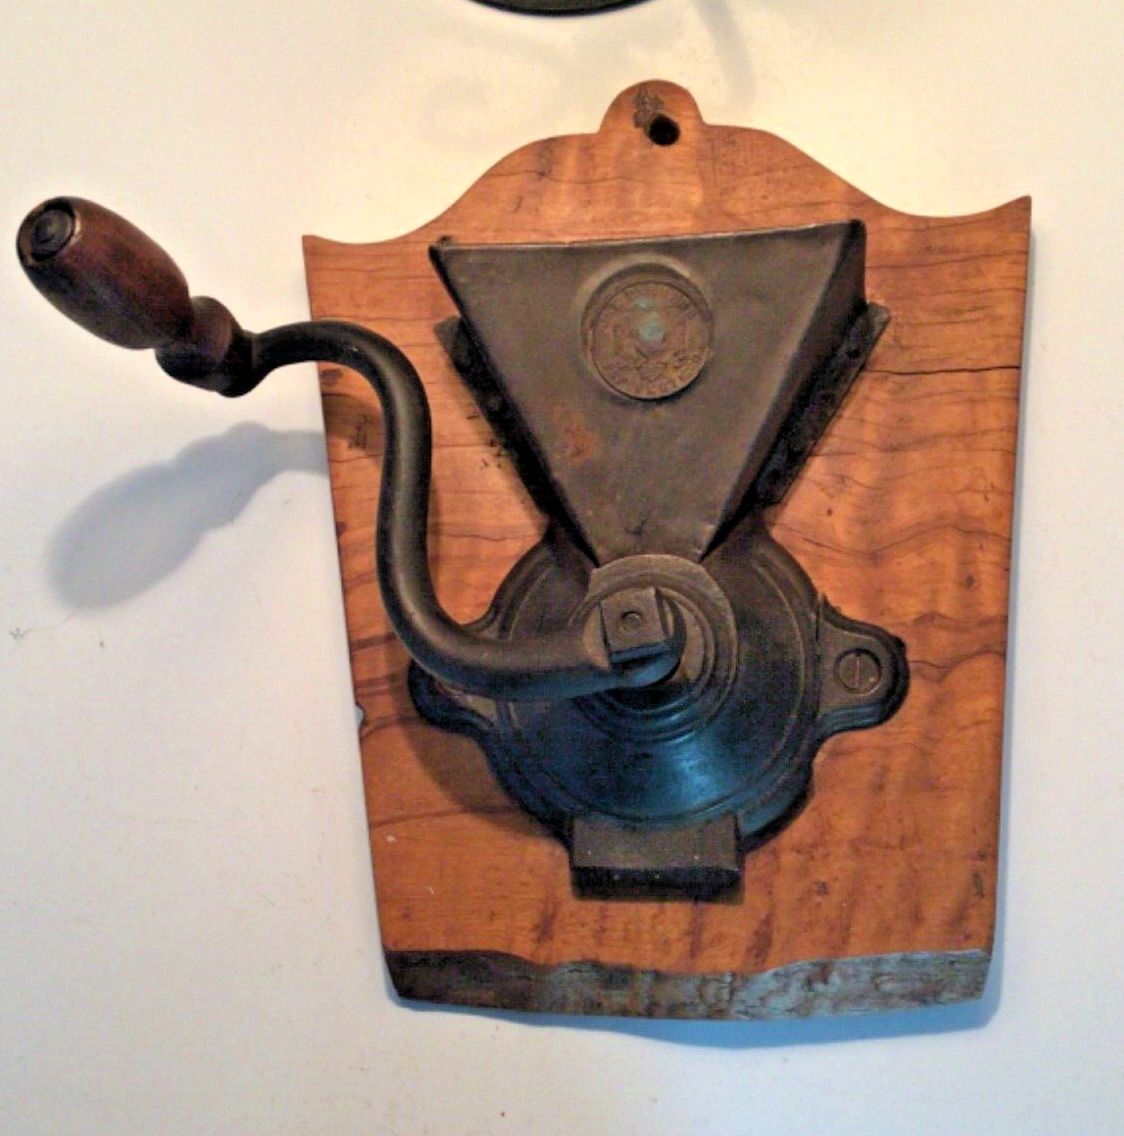 Antique Primitive Cast Iron J & E PARKERS Wall COFFEE GRINDER, Pat 1860, REPAIR